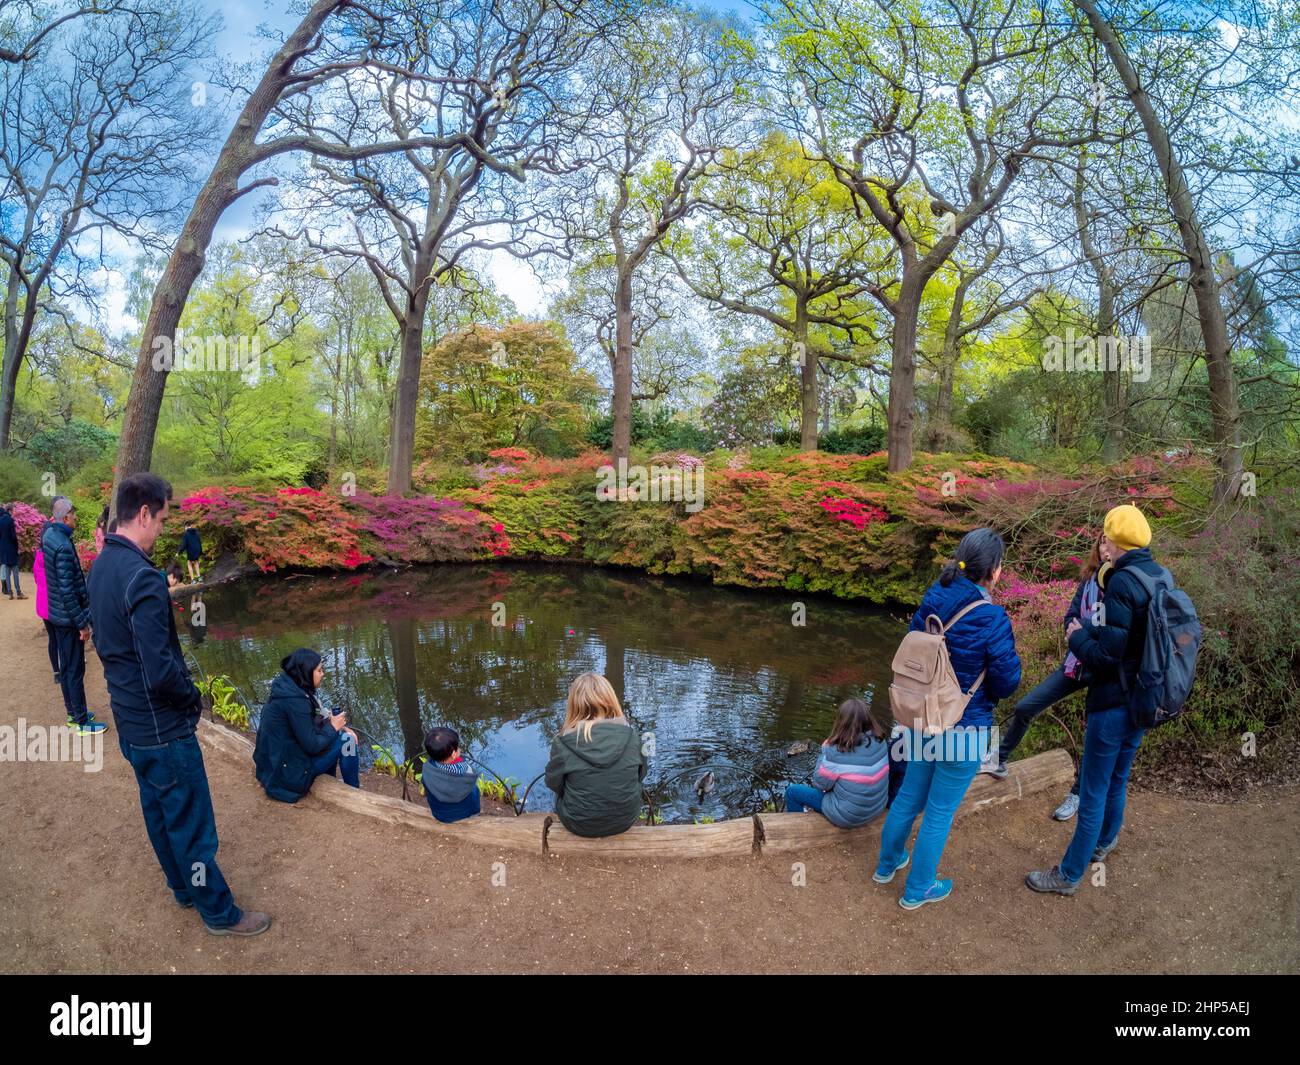 Londres, Inglaterra, Reino Unido - 1 de mayo de 2021: Amplia vista de un grupo de personas que rodean un hermoso lago dentro de la famosa plantación Isabella en primavera Foto de stock